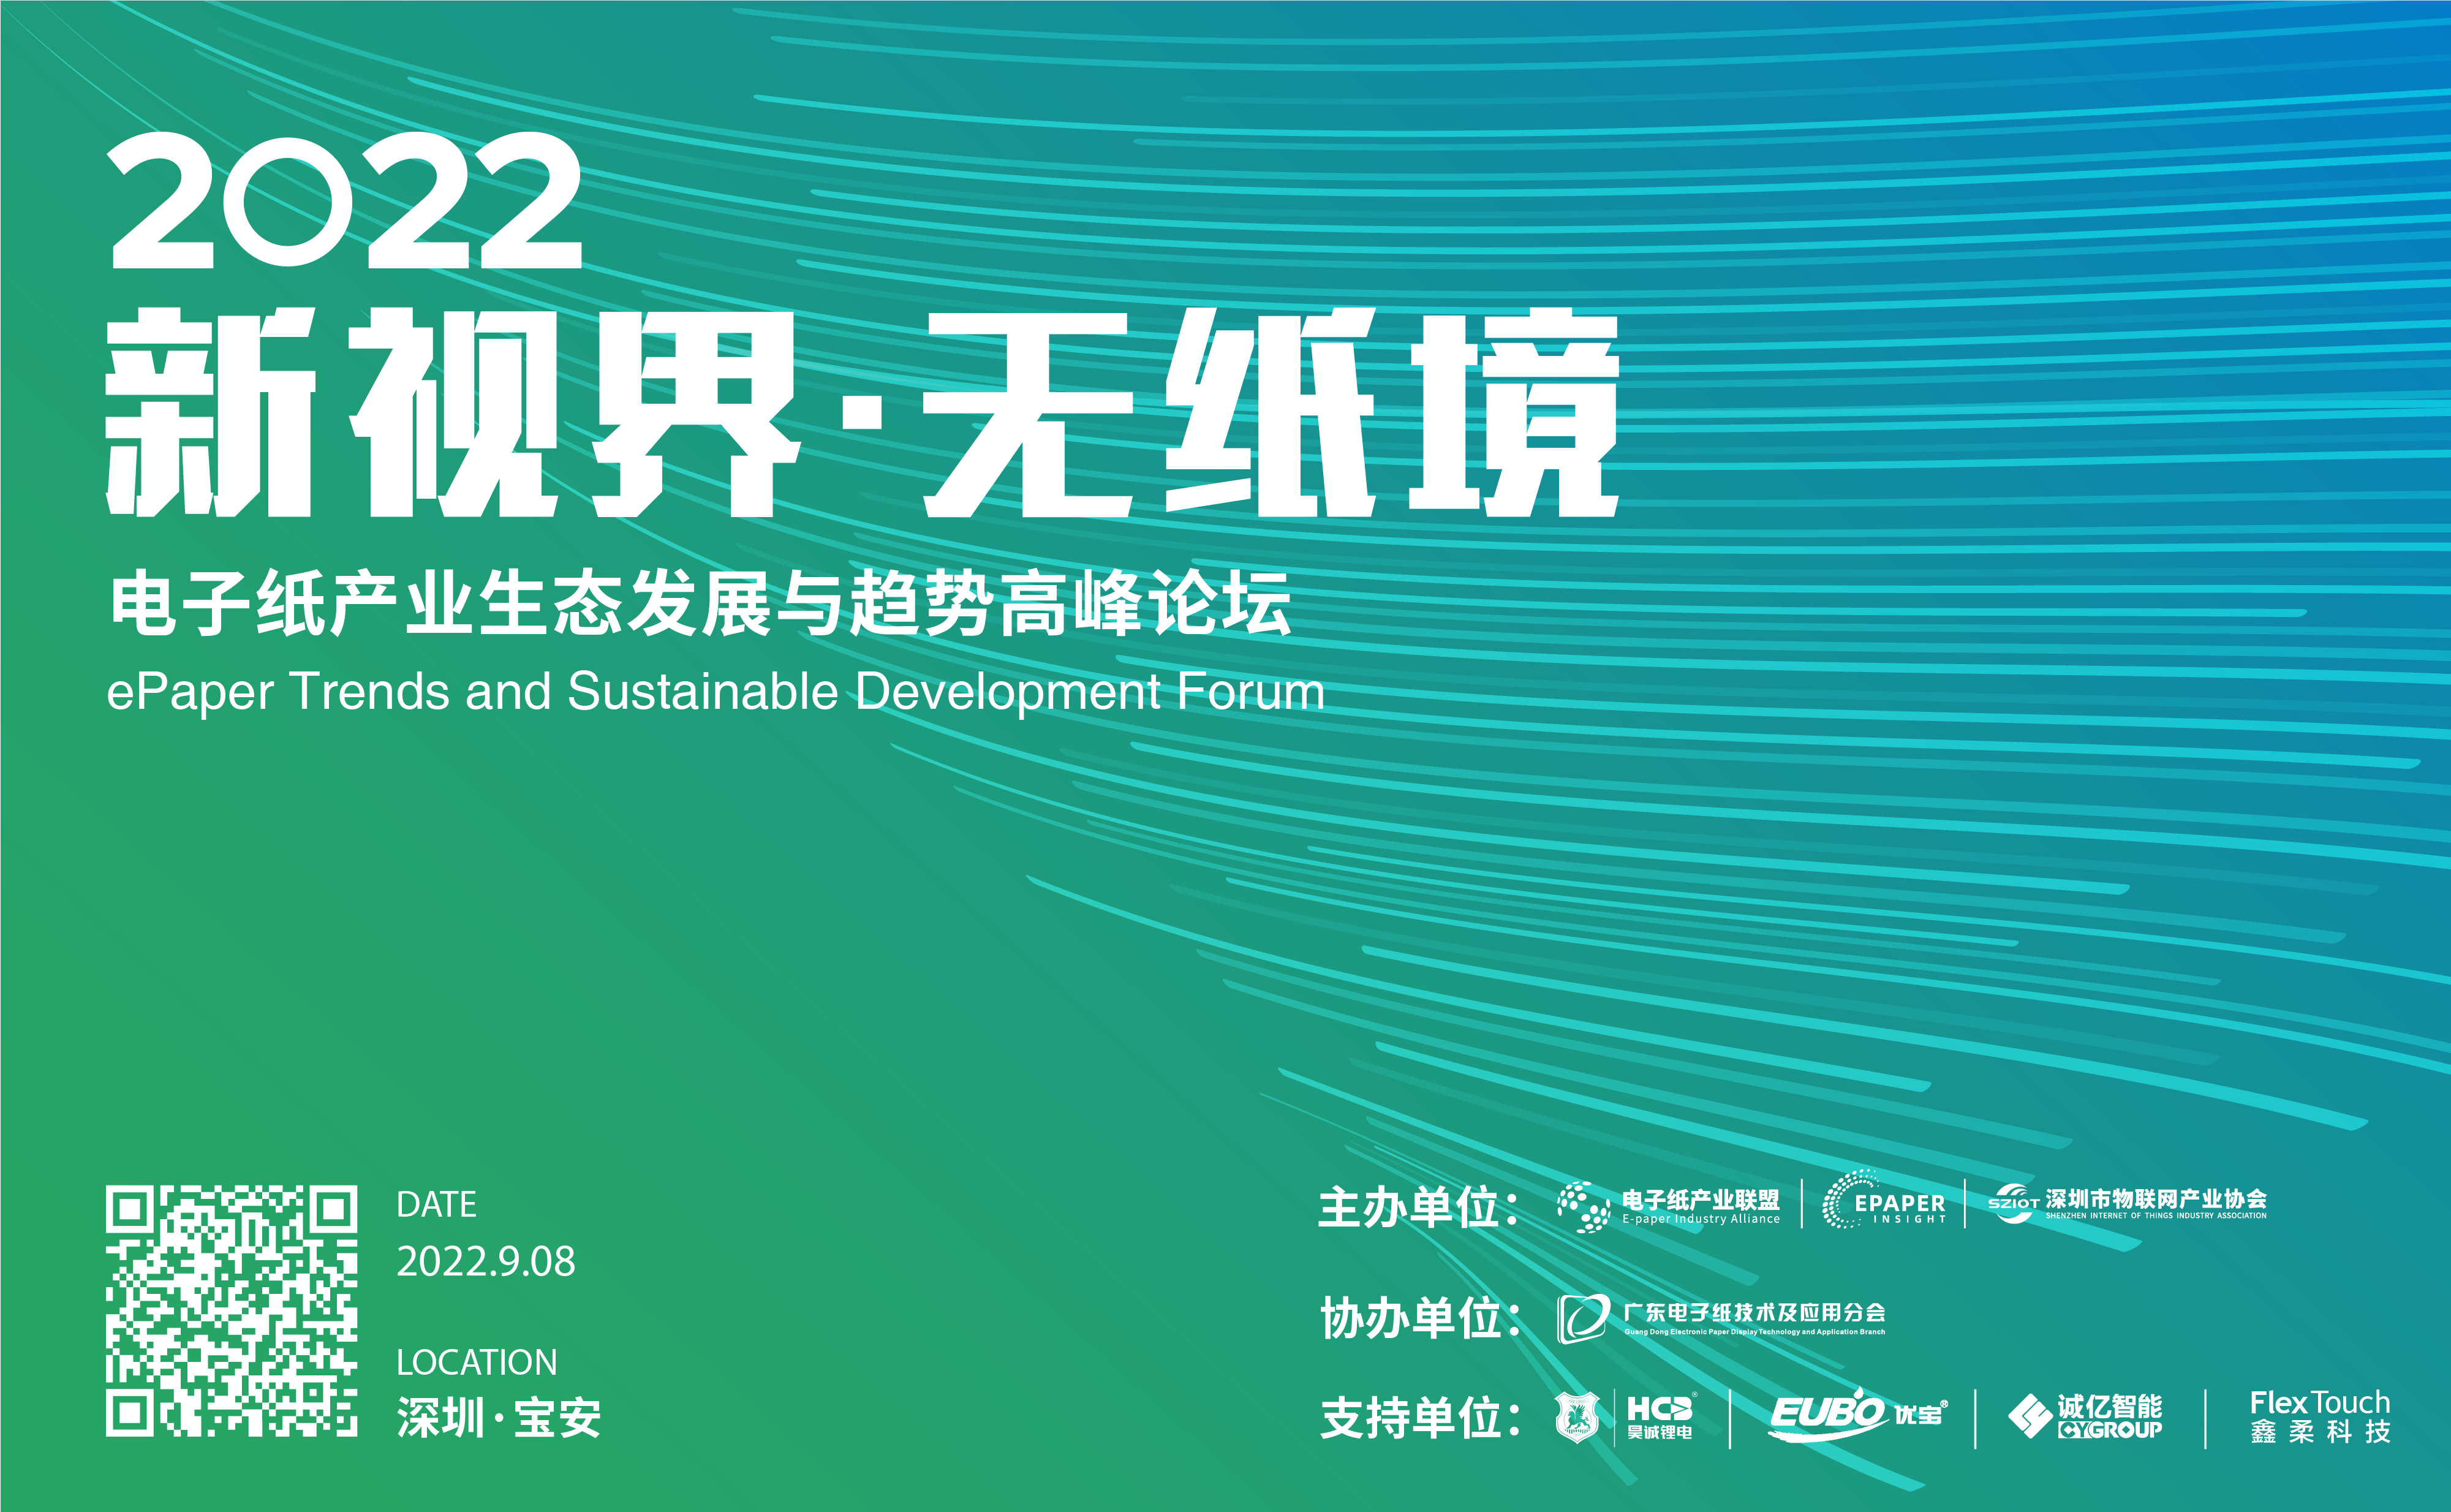 9/8 深圳 | 2022电子纸产业生态发展与趋势高峰论坛